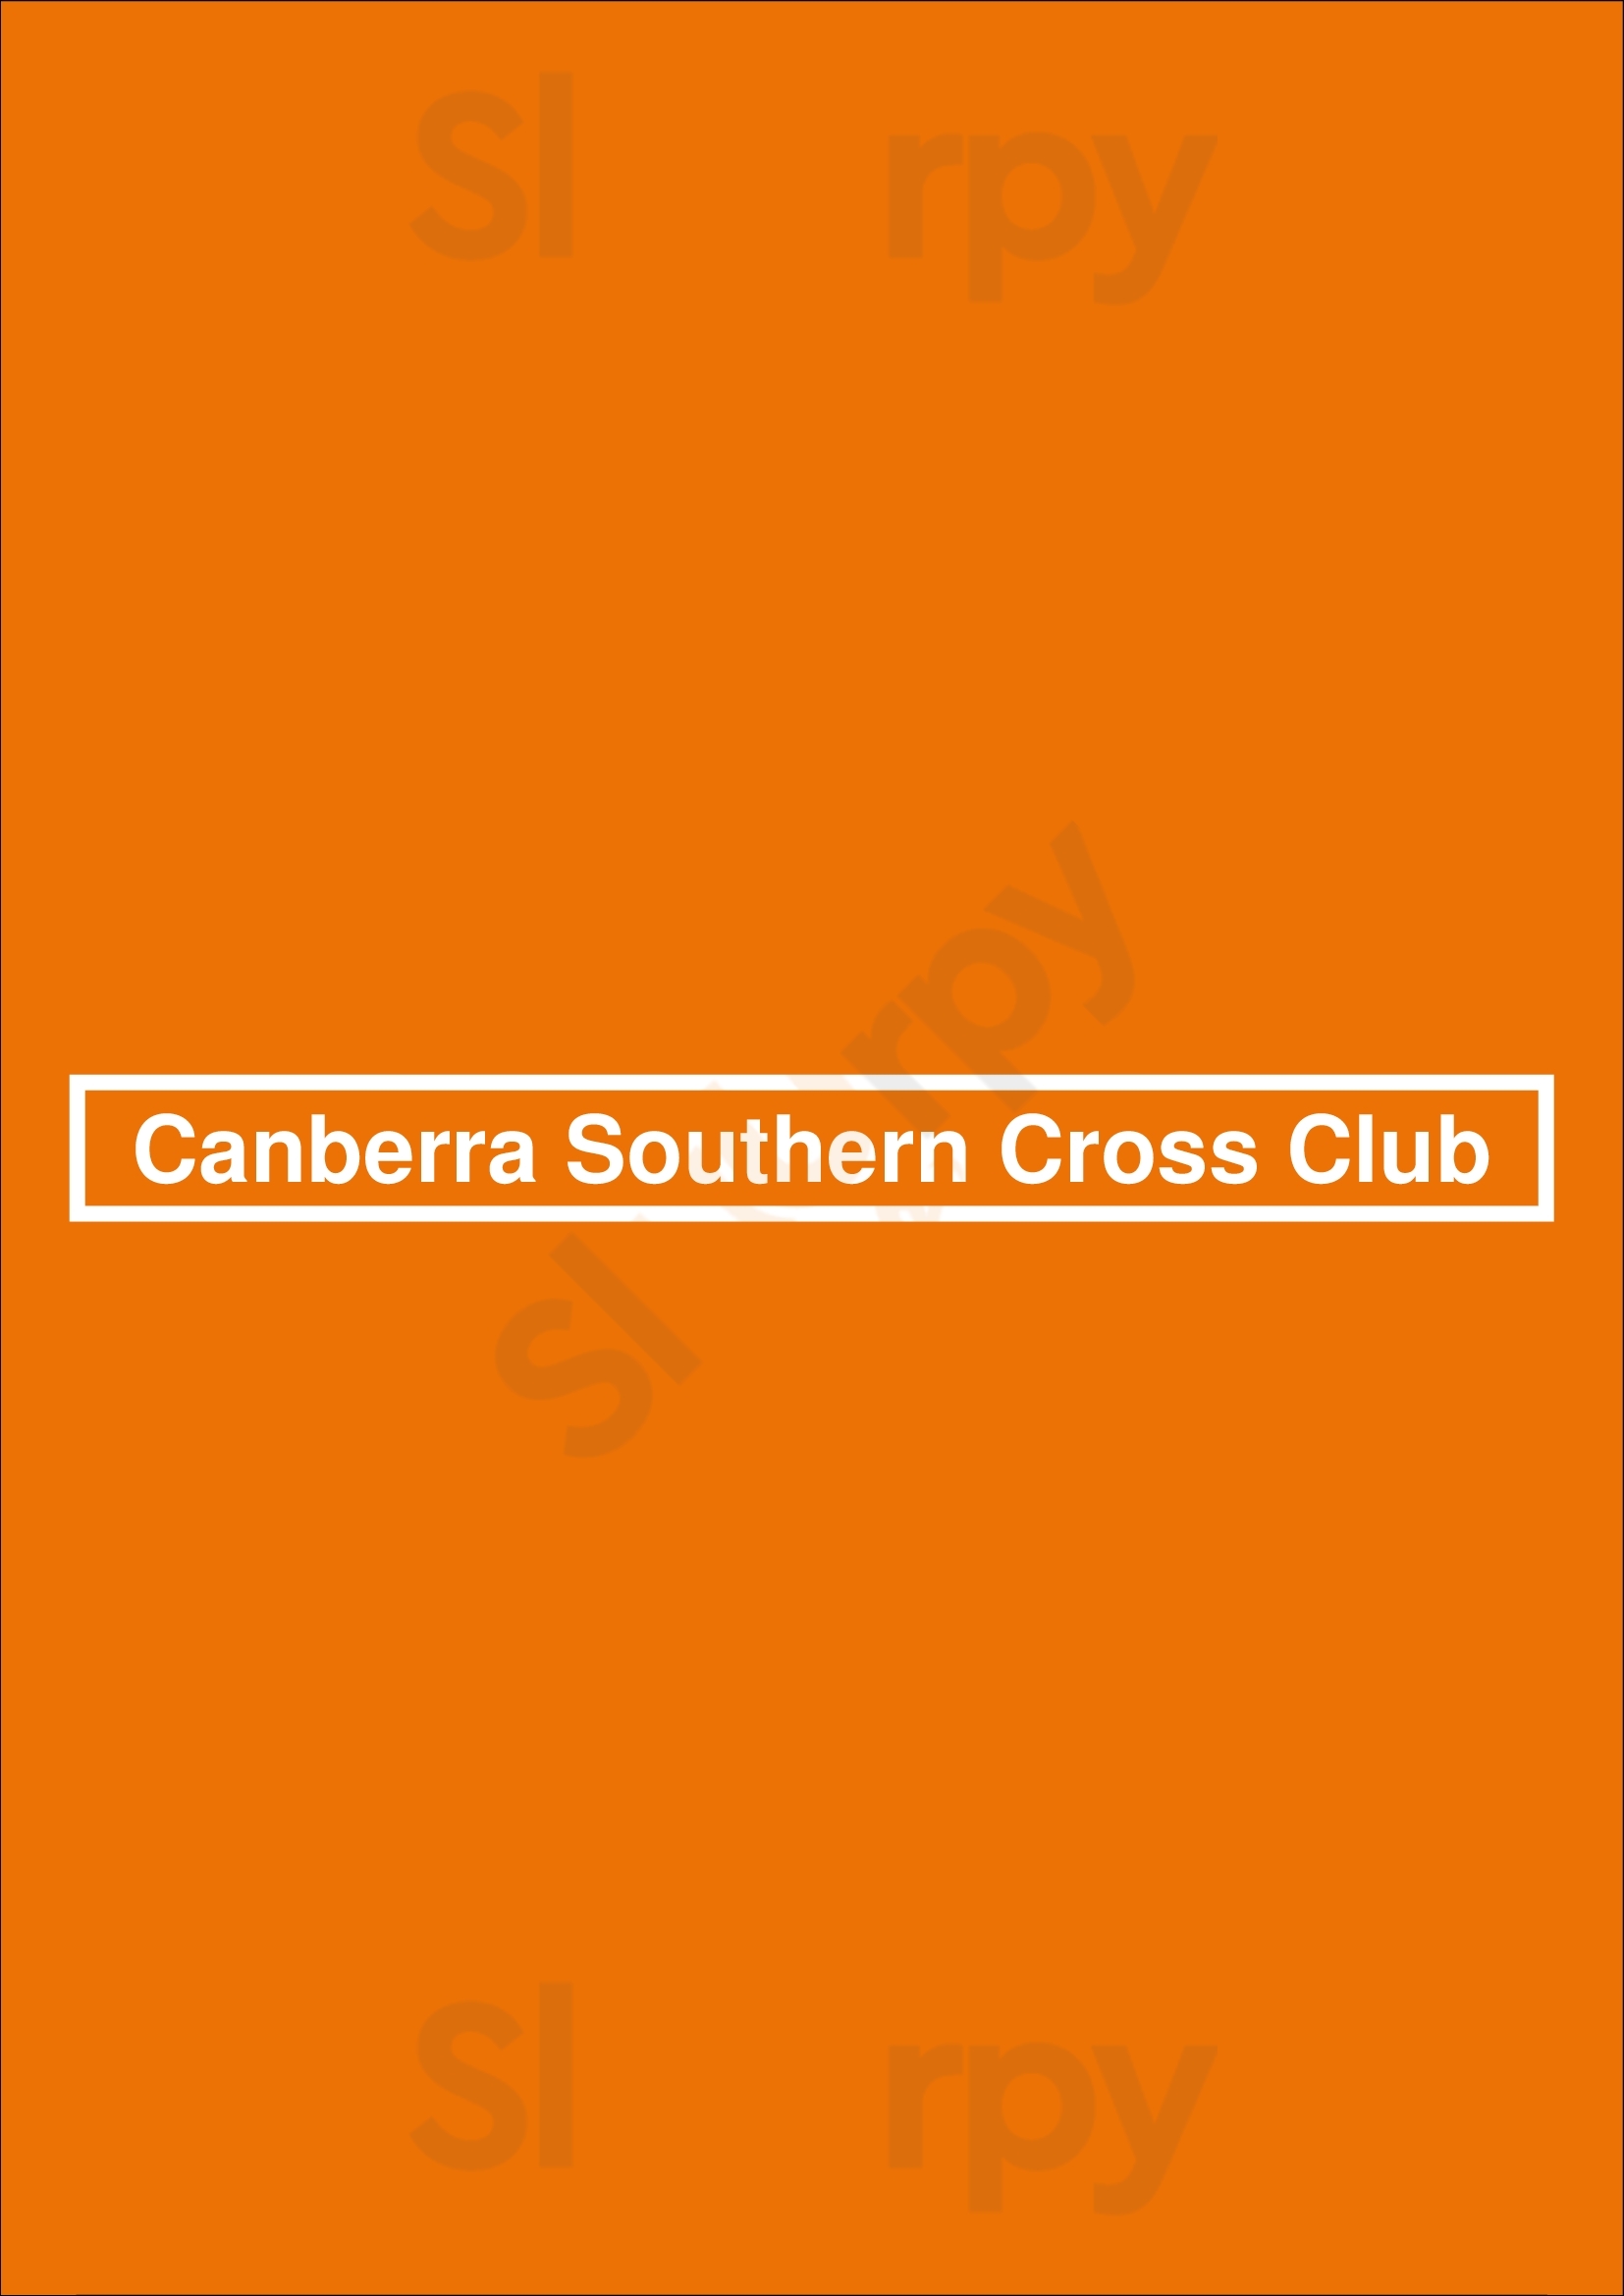 Canberra Southern Cross Club Canberra Menu - 1